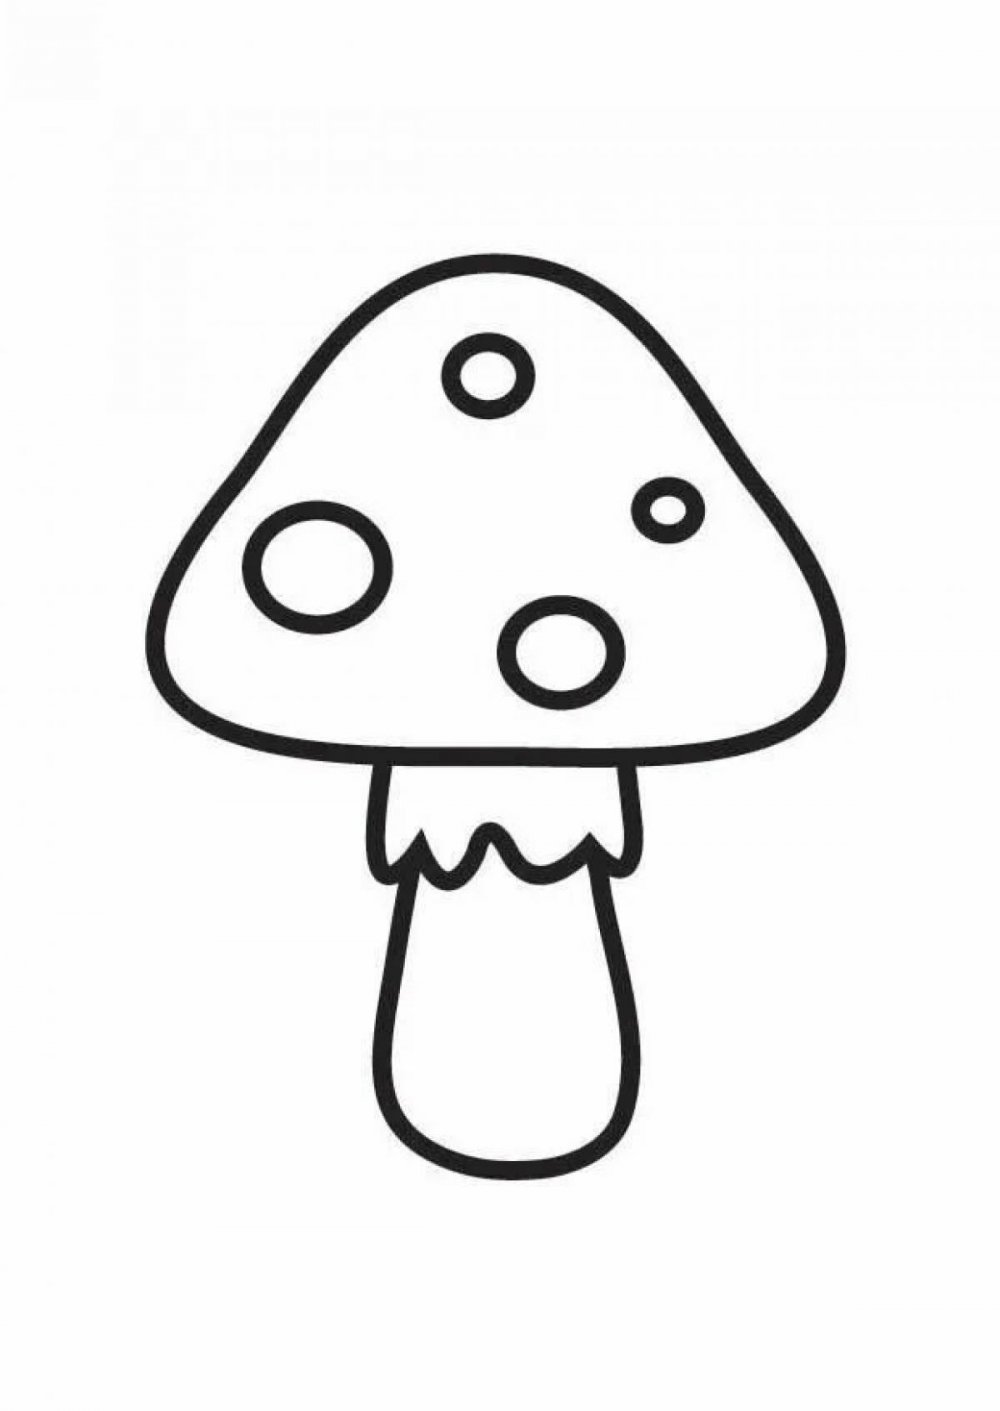 Раскраска грибы для детей 6-7 лет